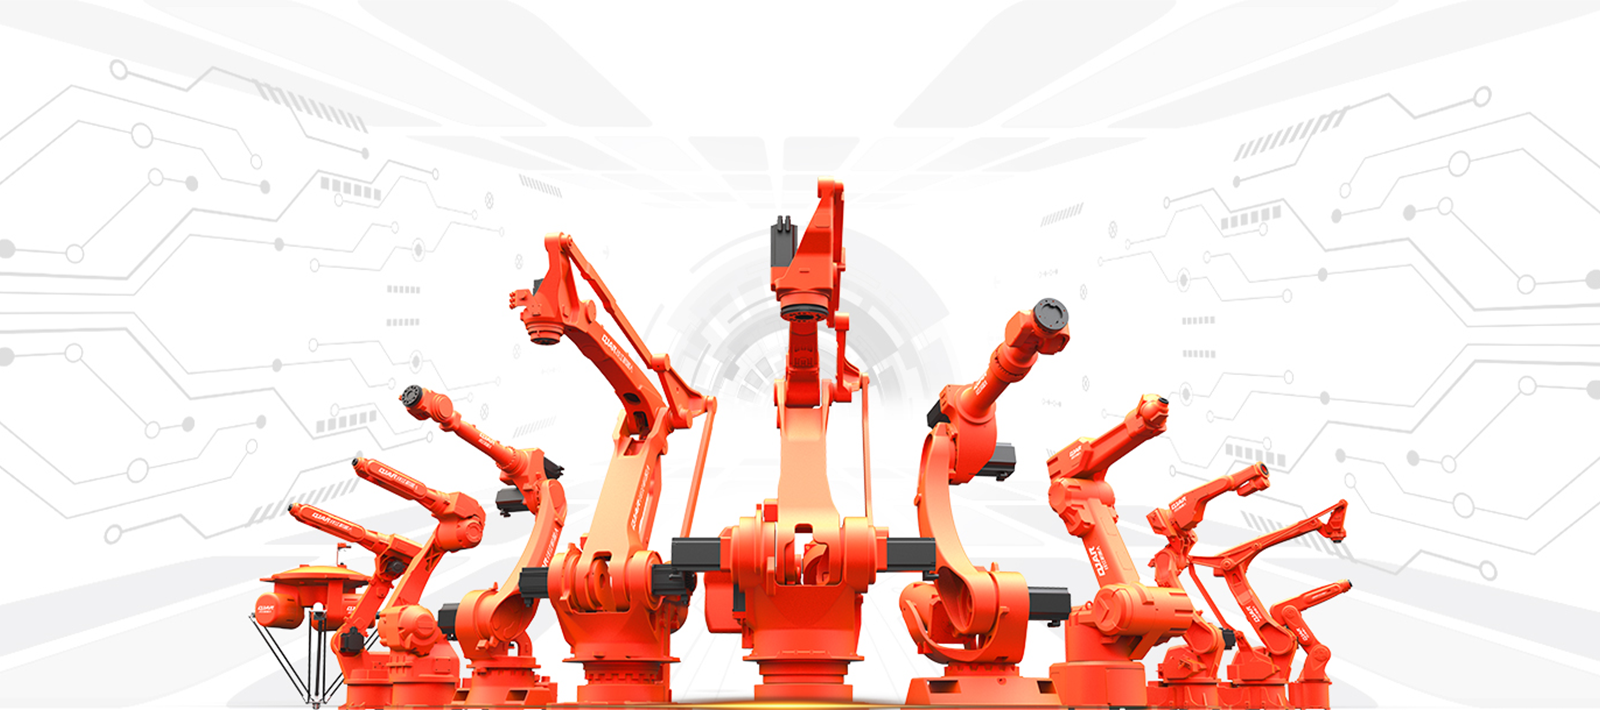 China Industrial Robotic Arm,Welding & Handling